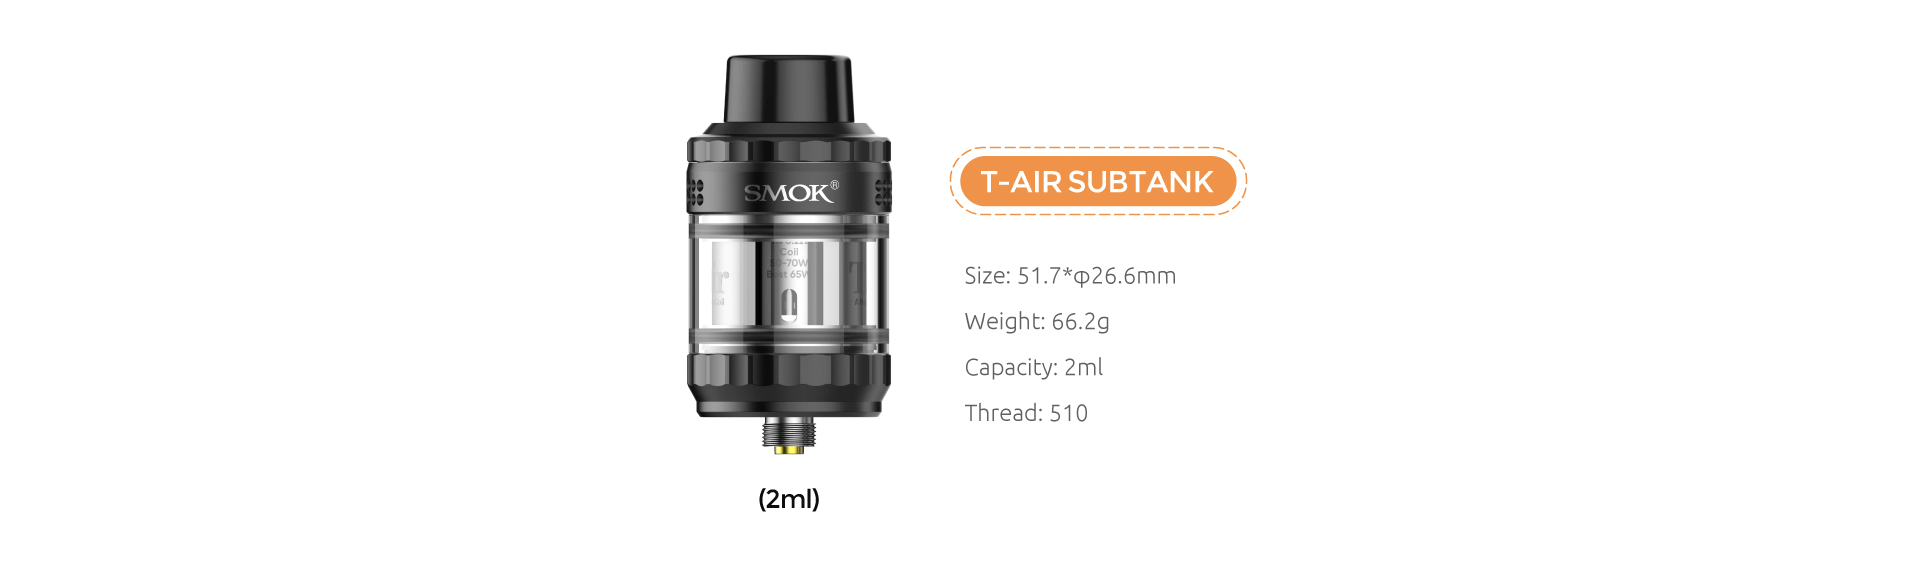 Smok Morph 3 | T-Air SubTank (2ml)